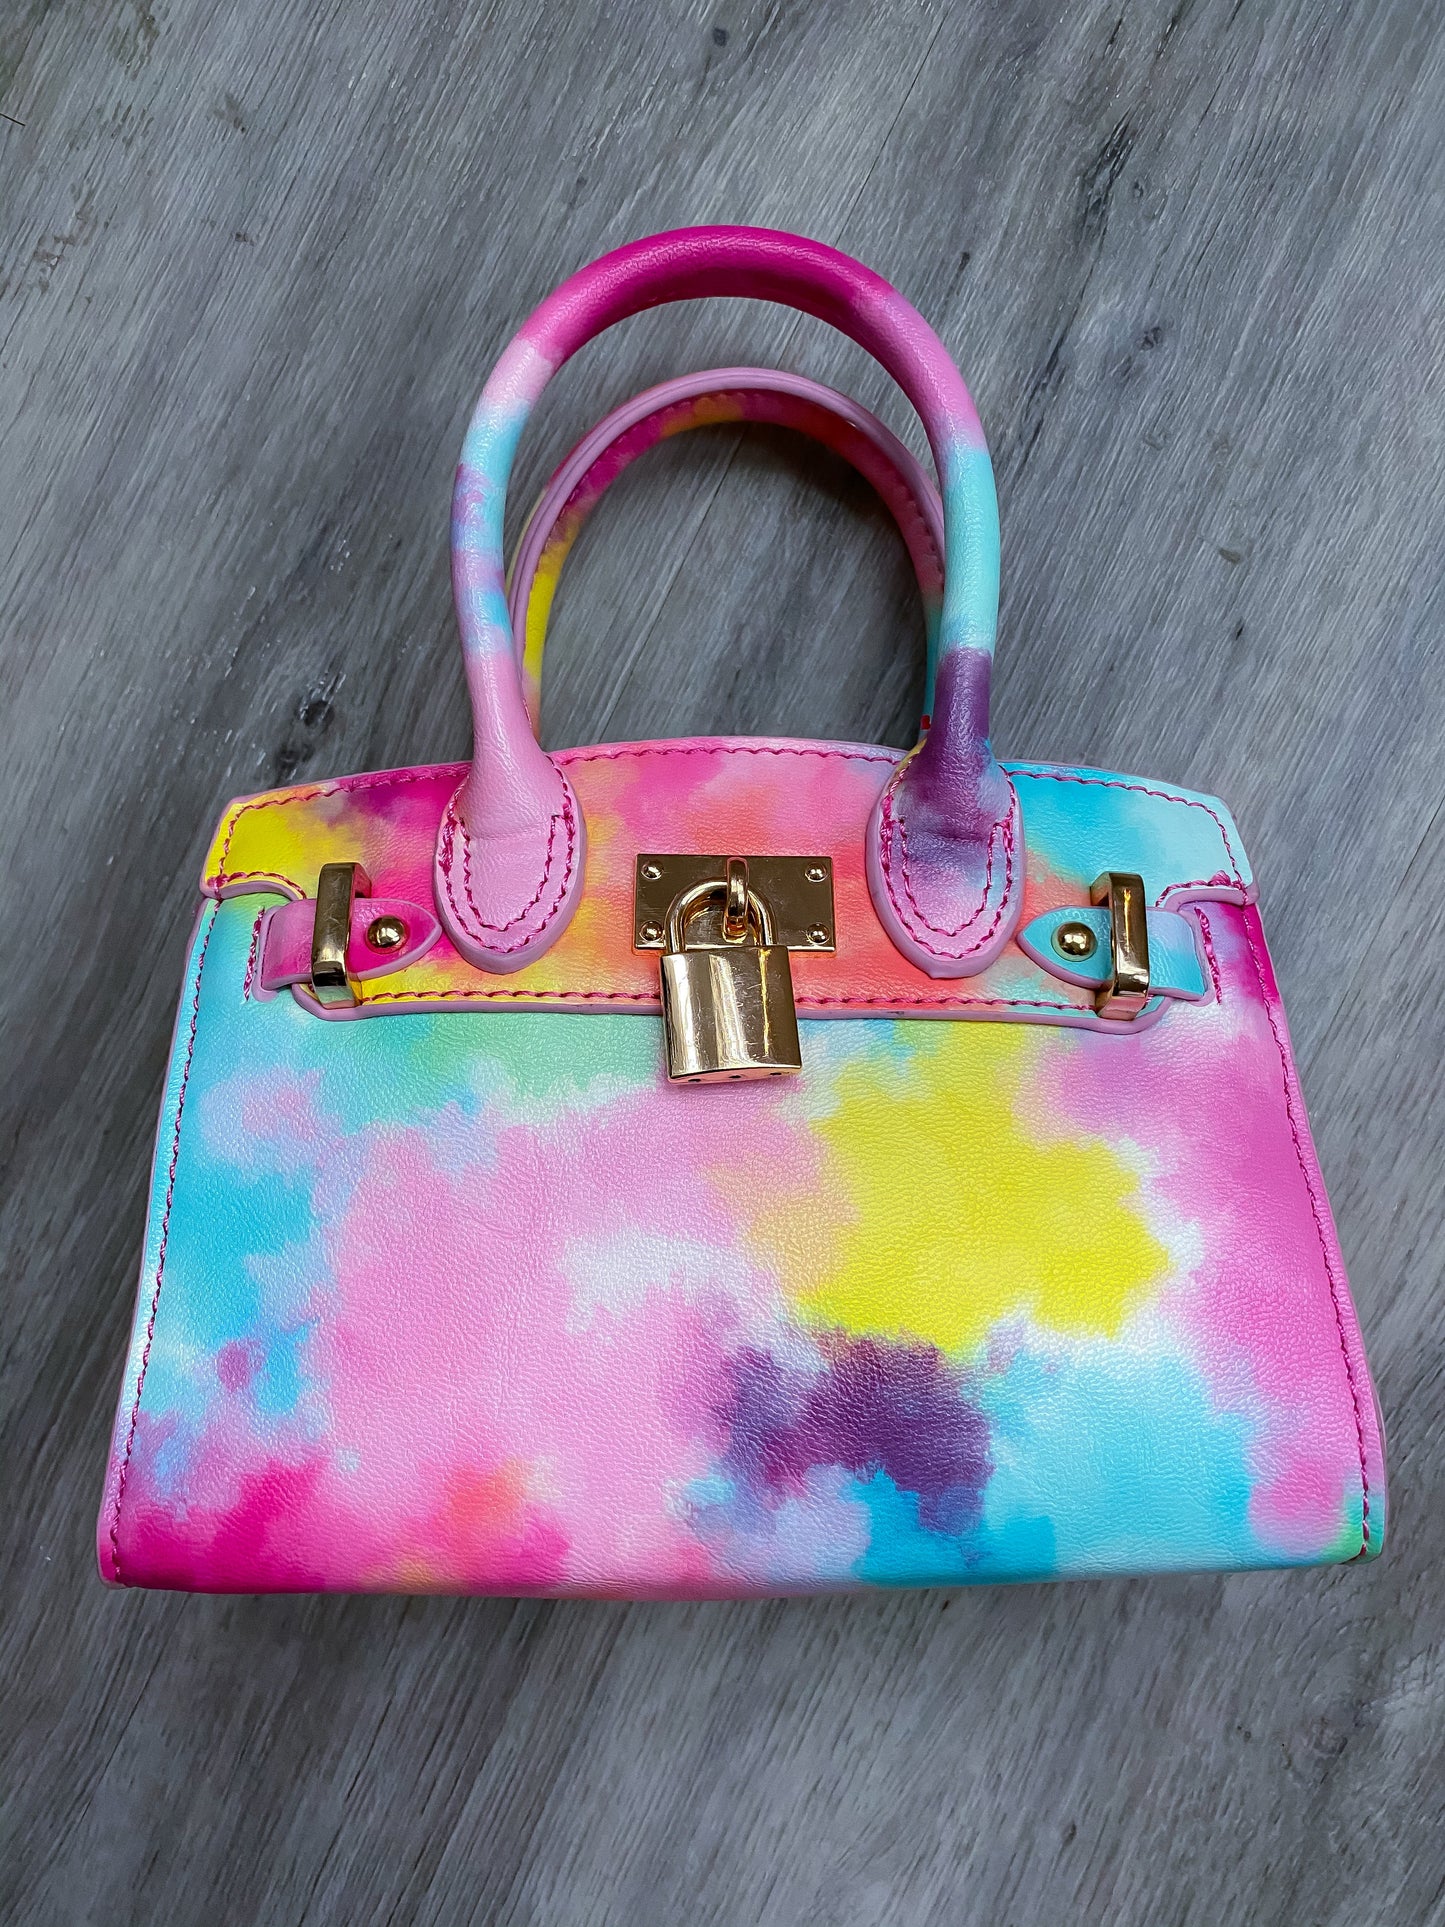 Watercolor Love Padlock Bag